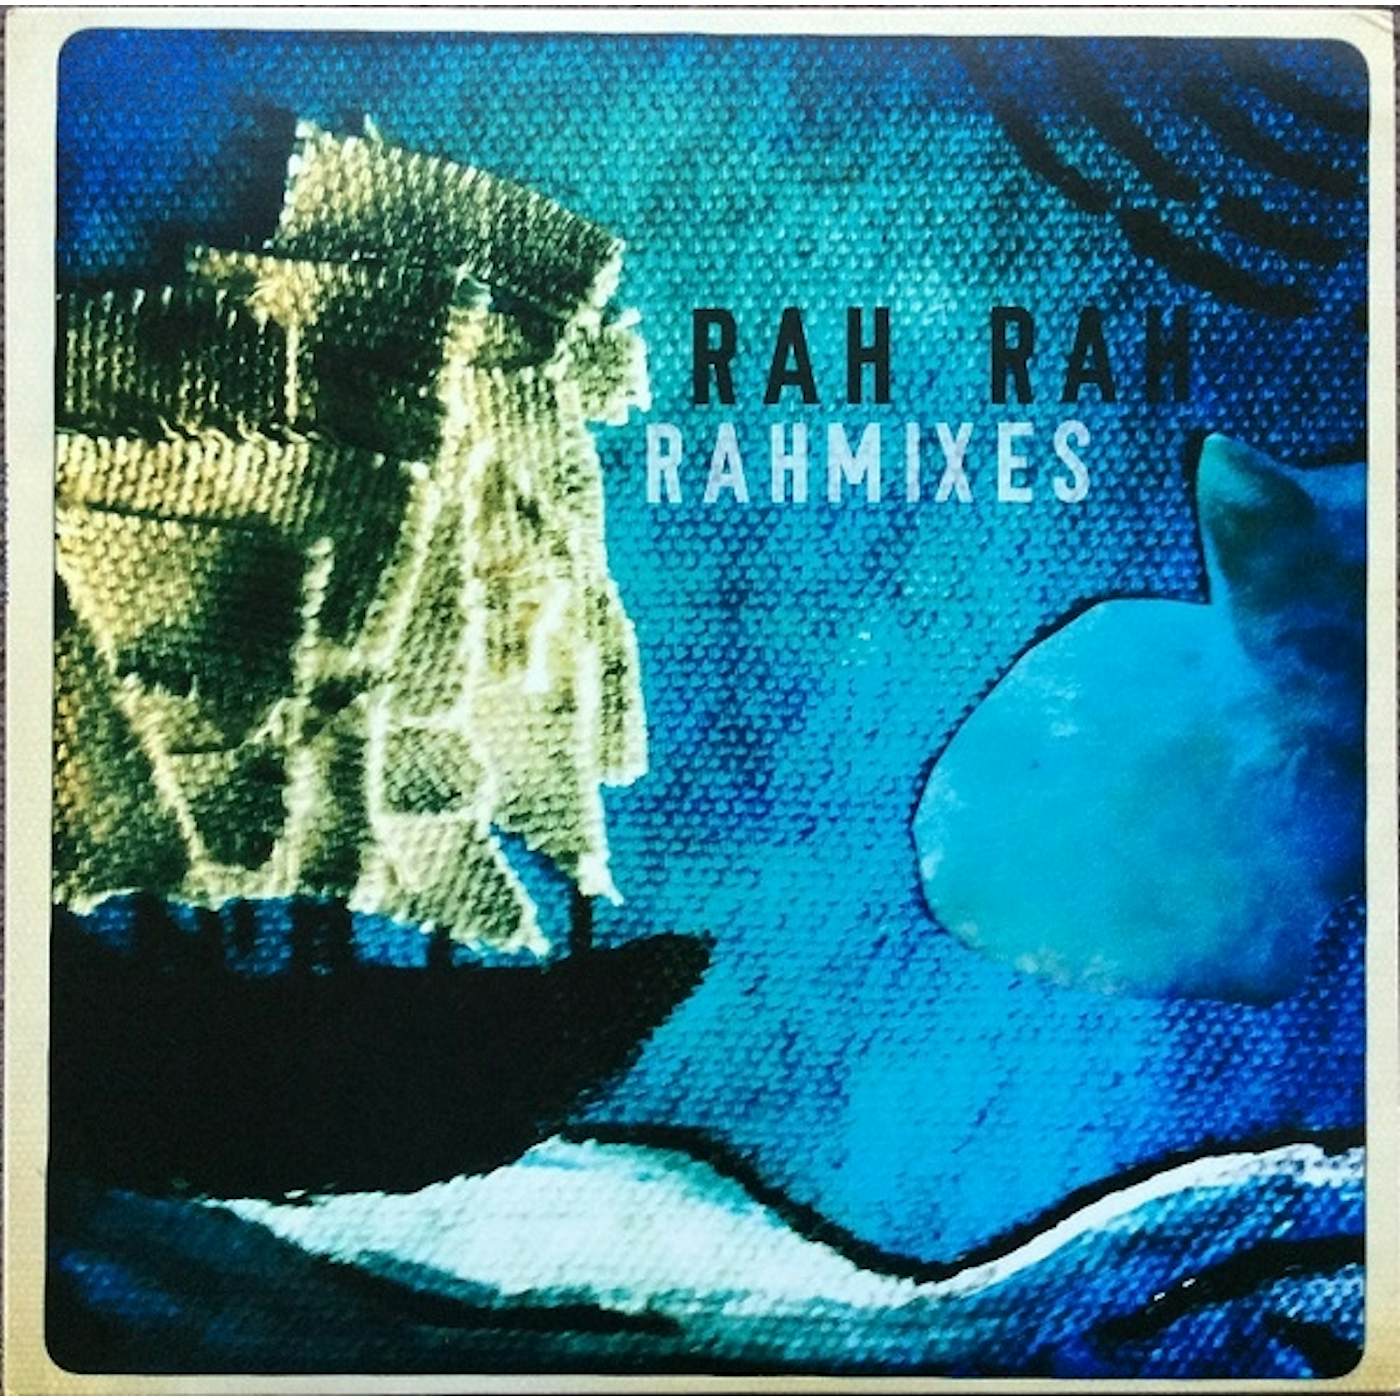 Rah Rah Rahmixes Vinyl Record